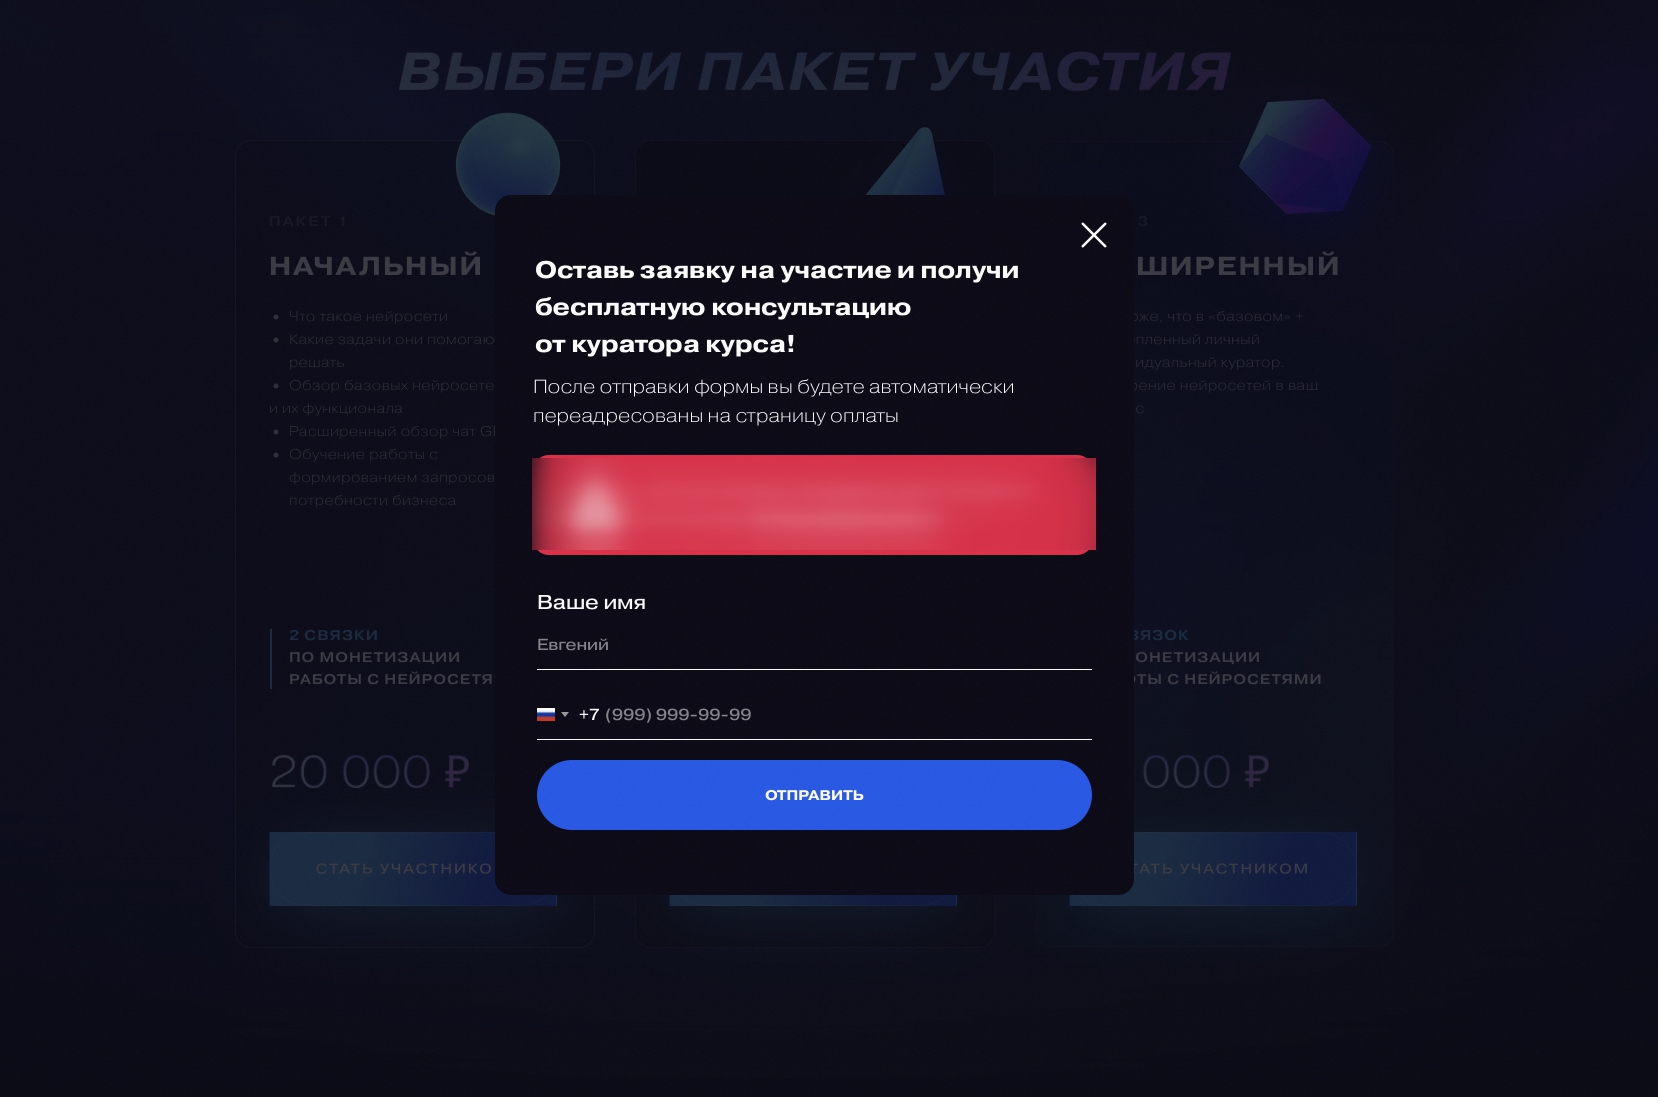 Как сделать связку таргет ВК + контекст Яндекс с ценой заявки 385 руб. на курс по нейросетям